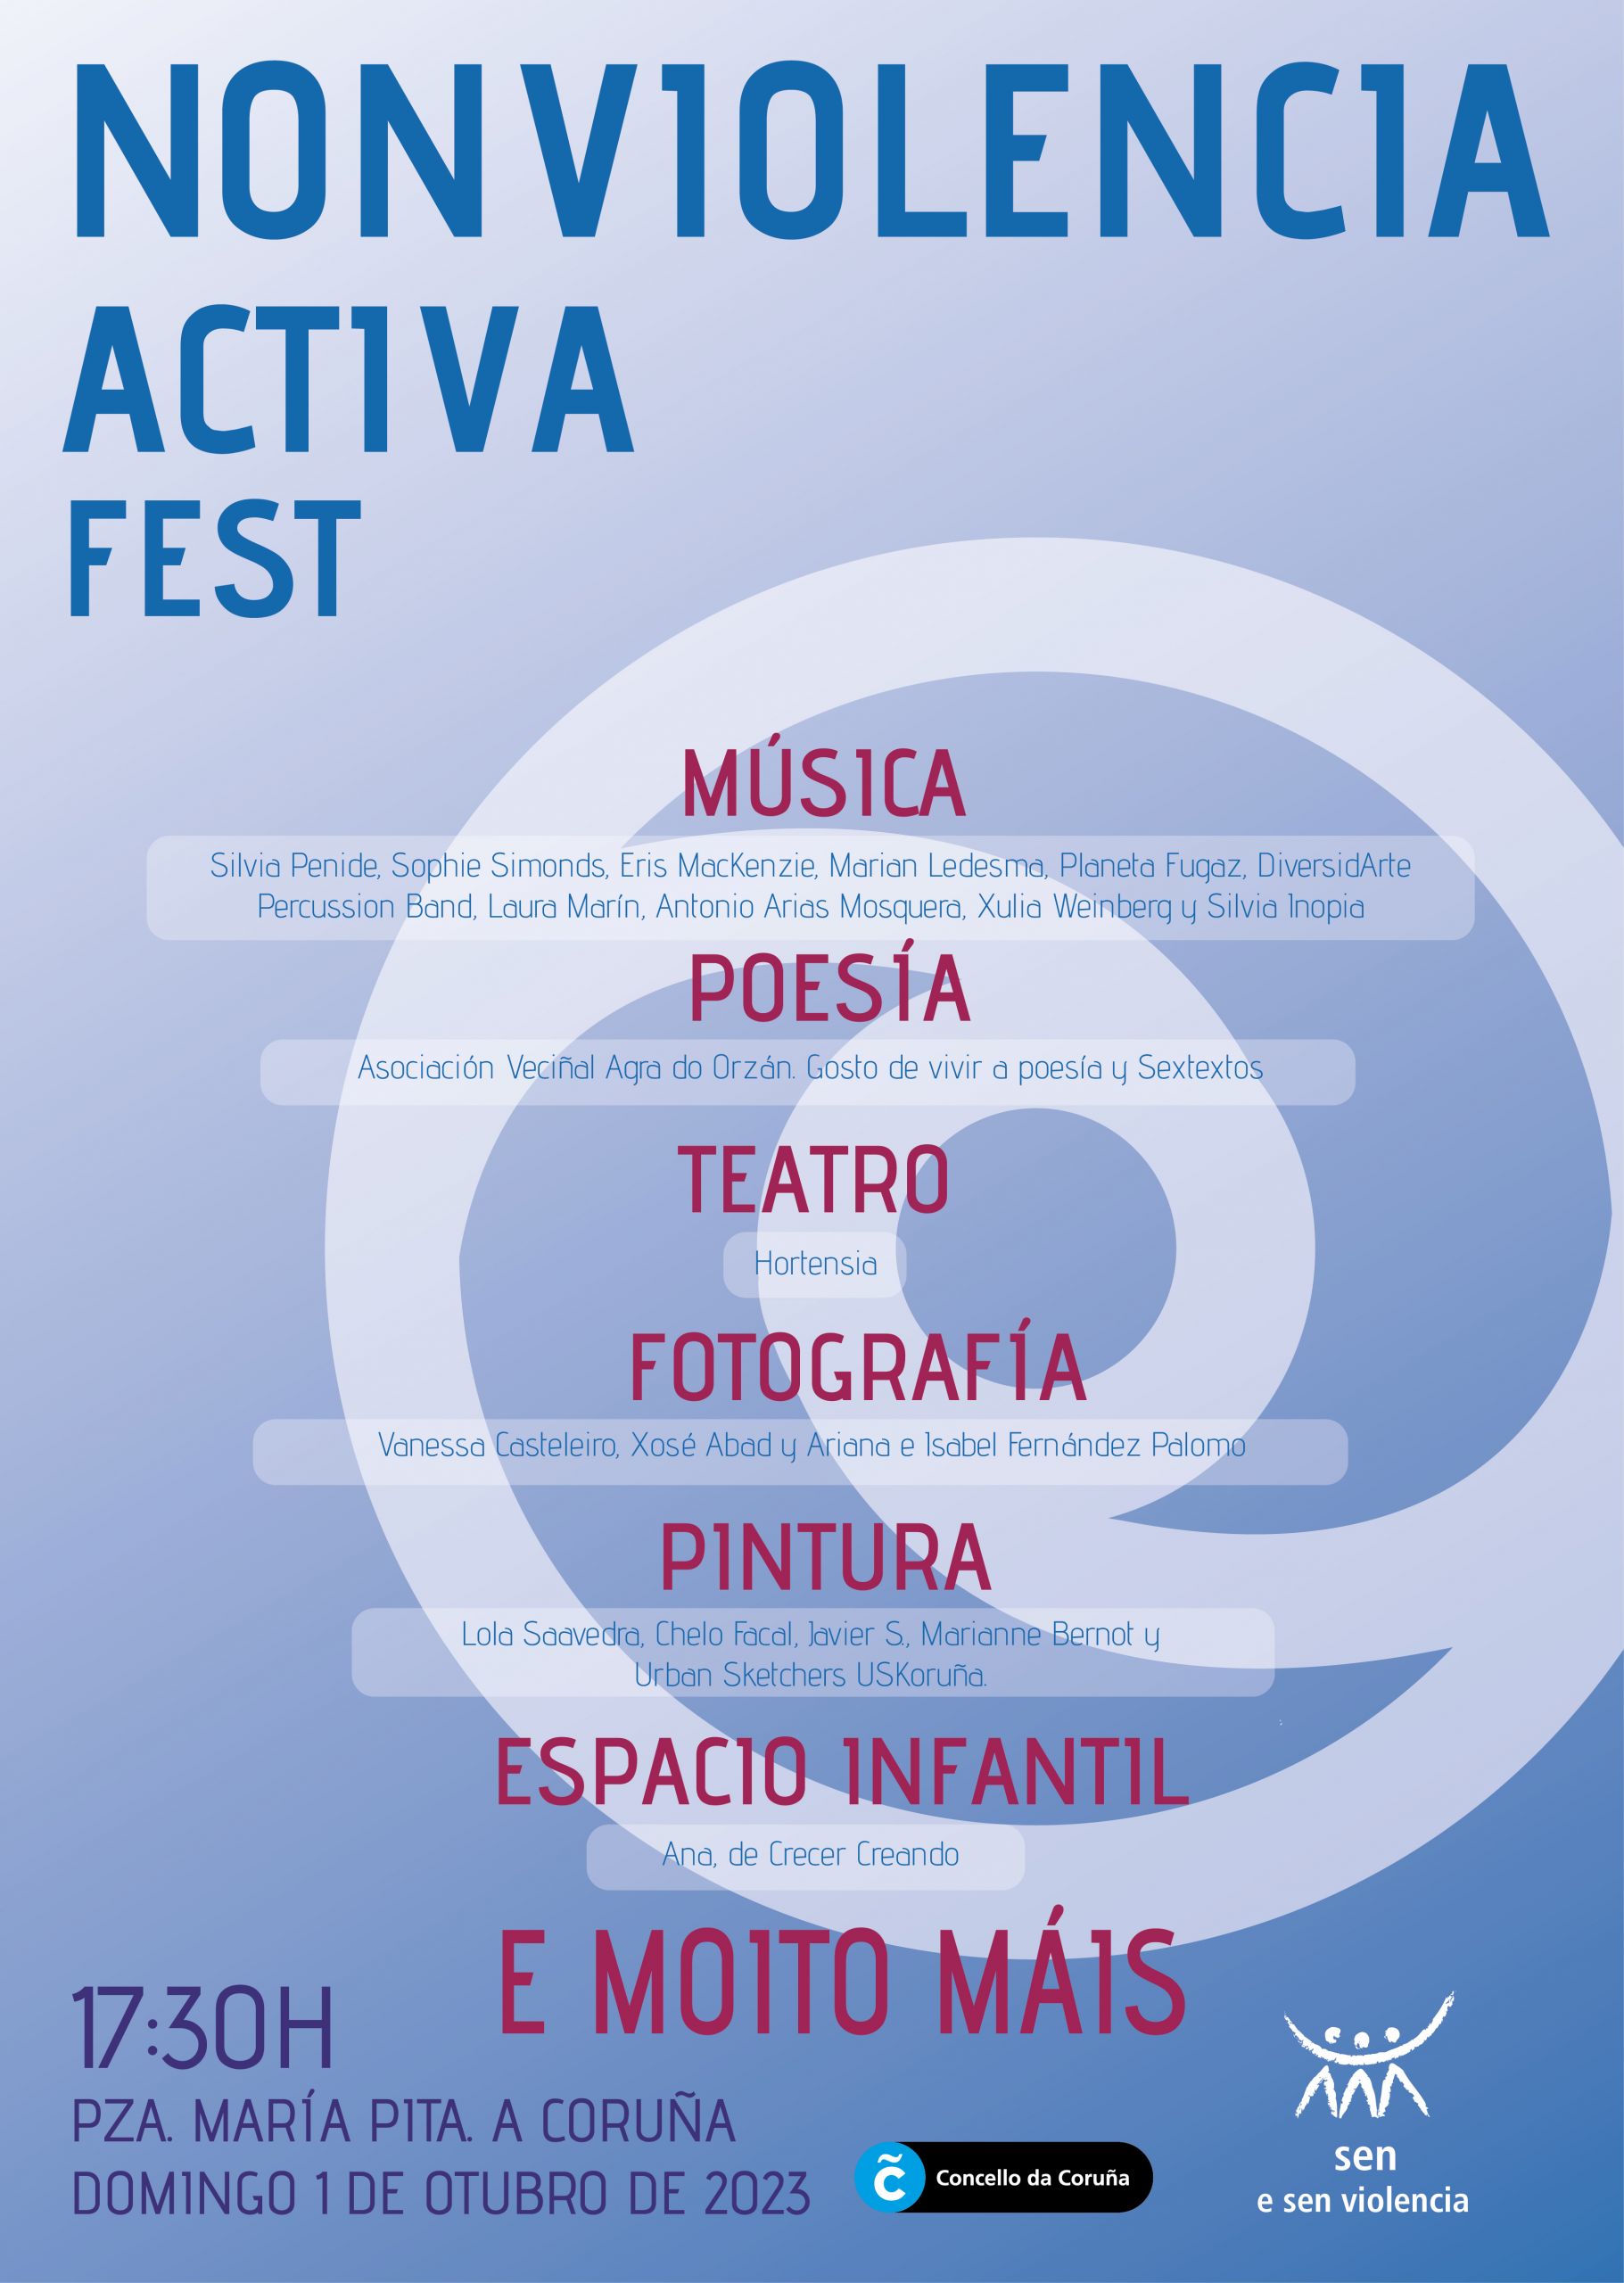 Nonviolencia Activa Fest en A Coruña